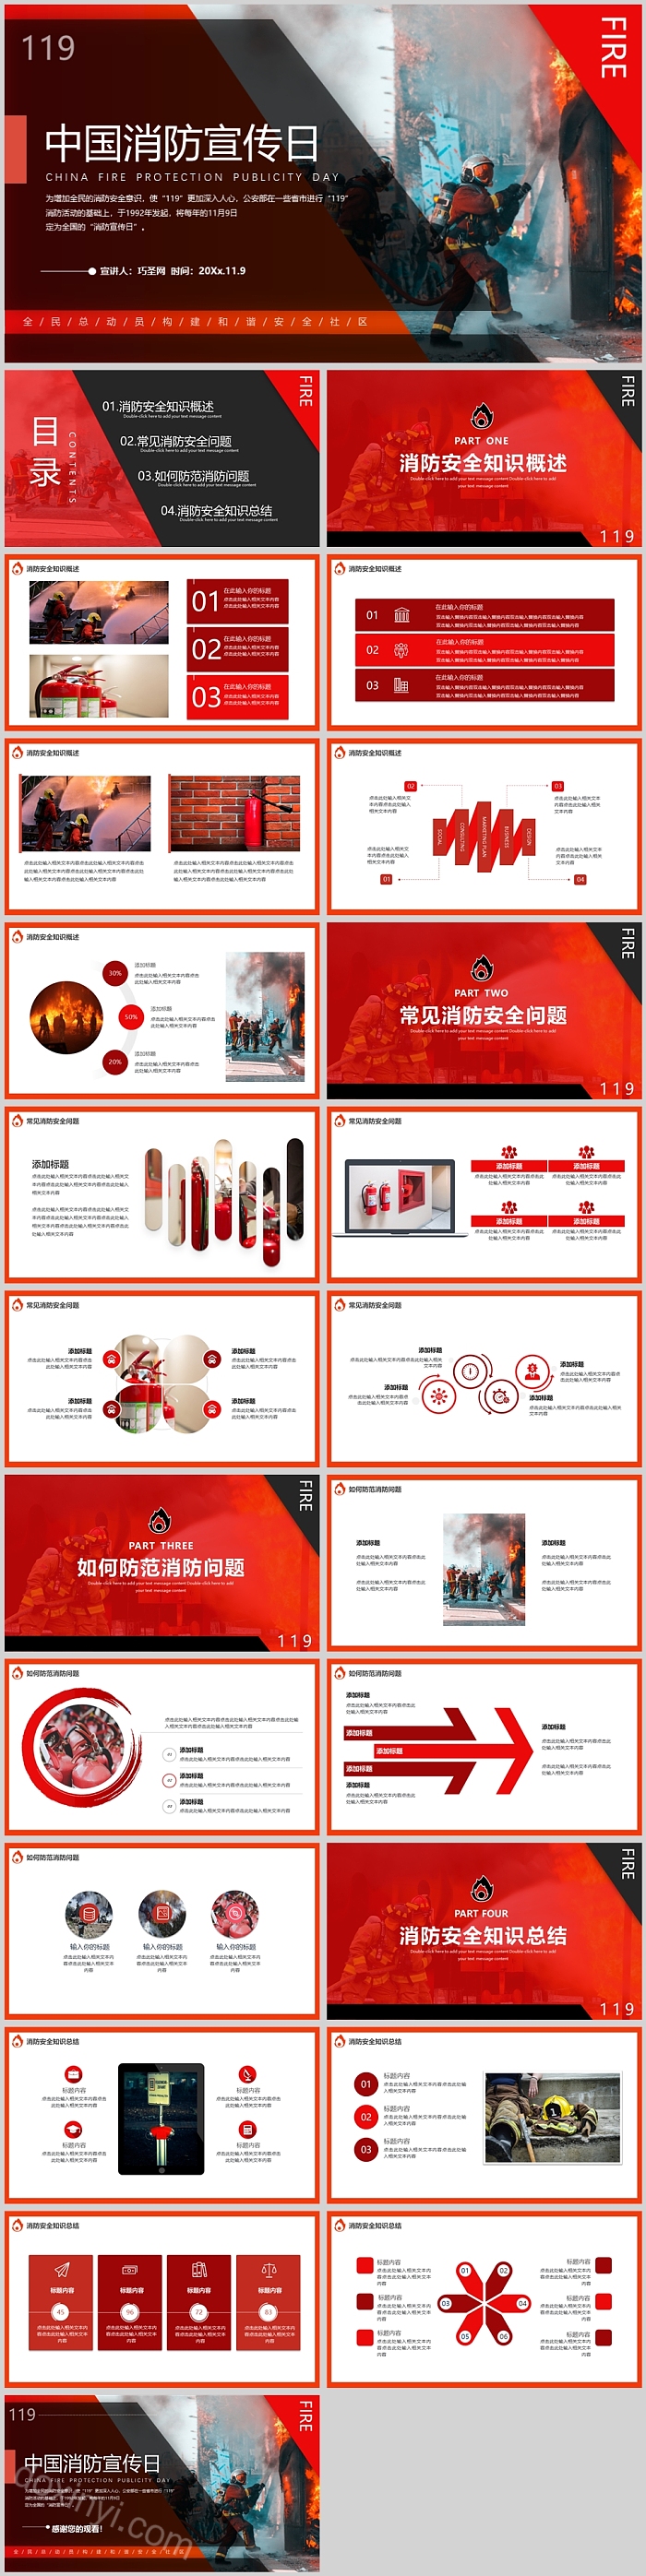 中国消防宣传日消防安全PPT模板